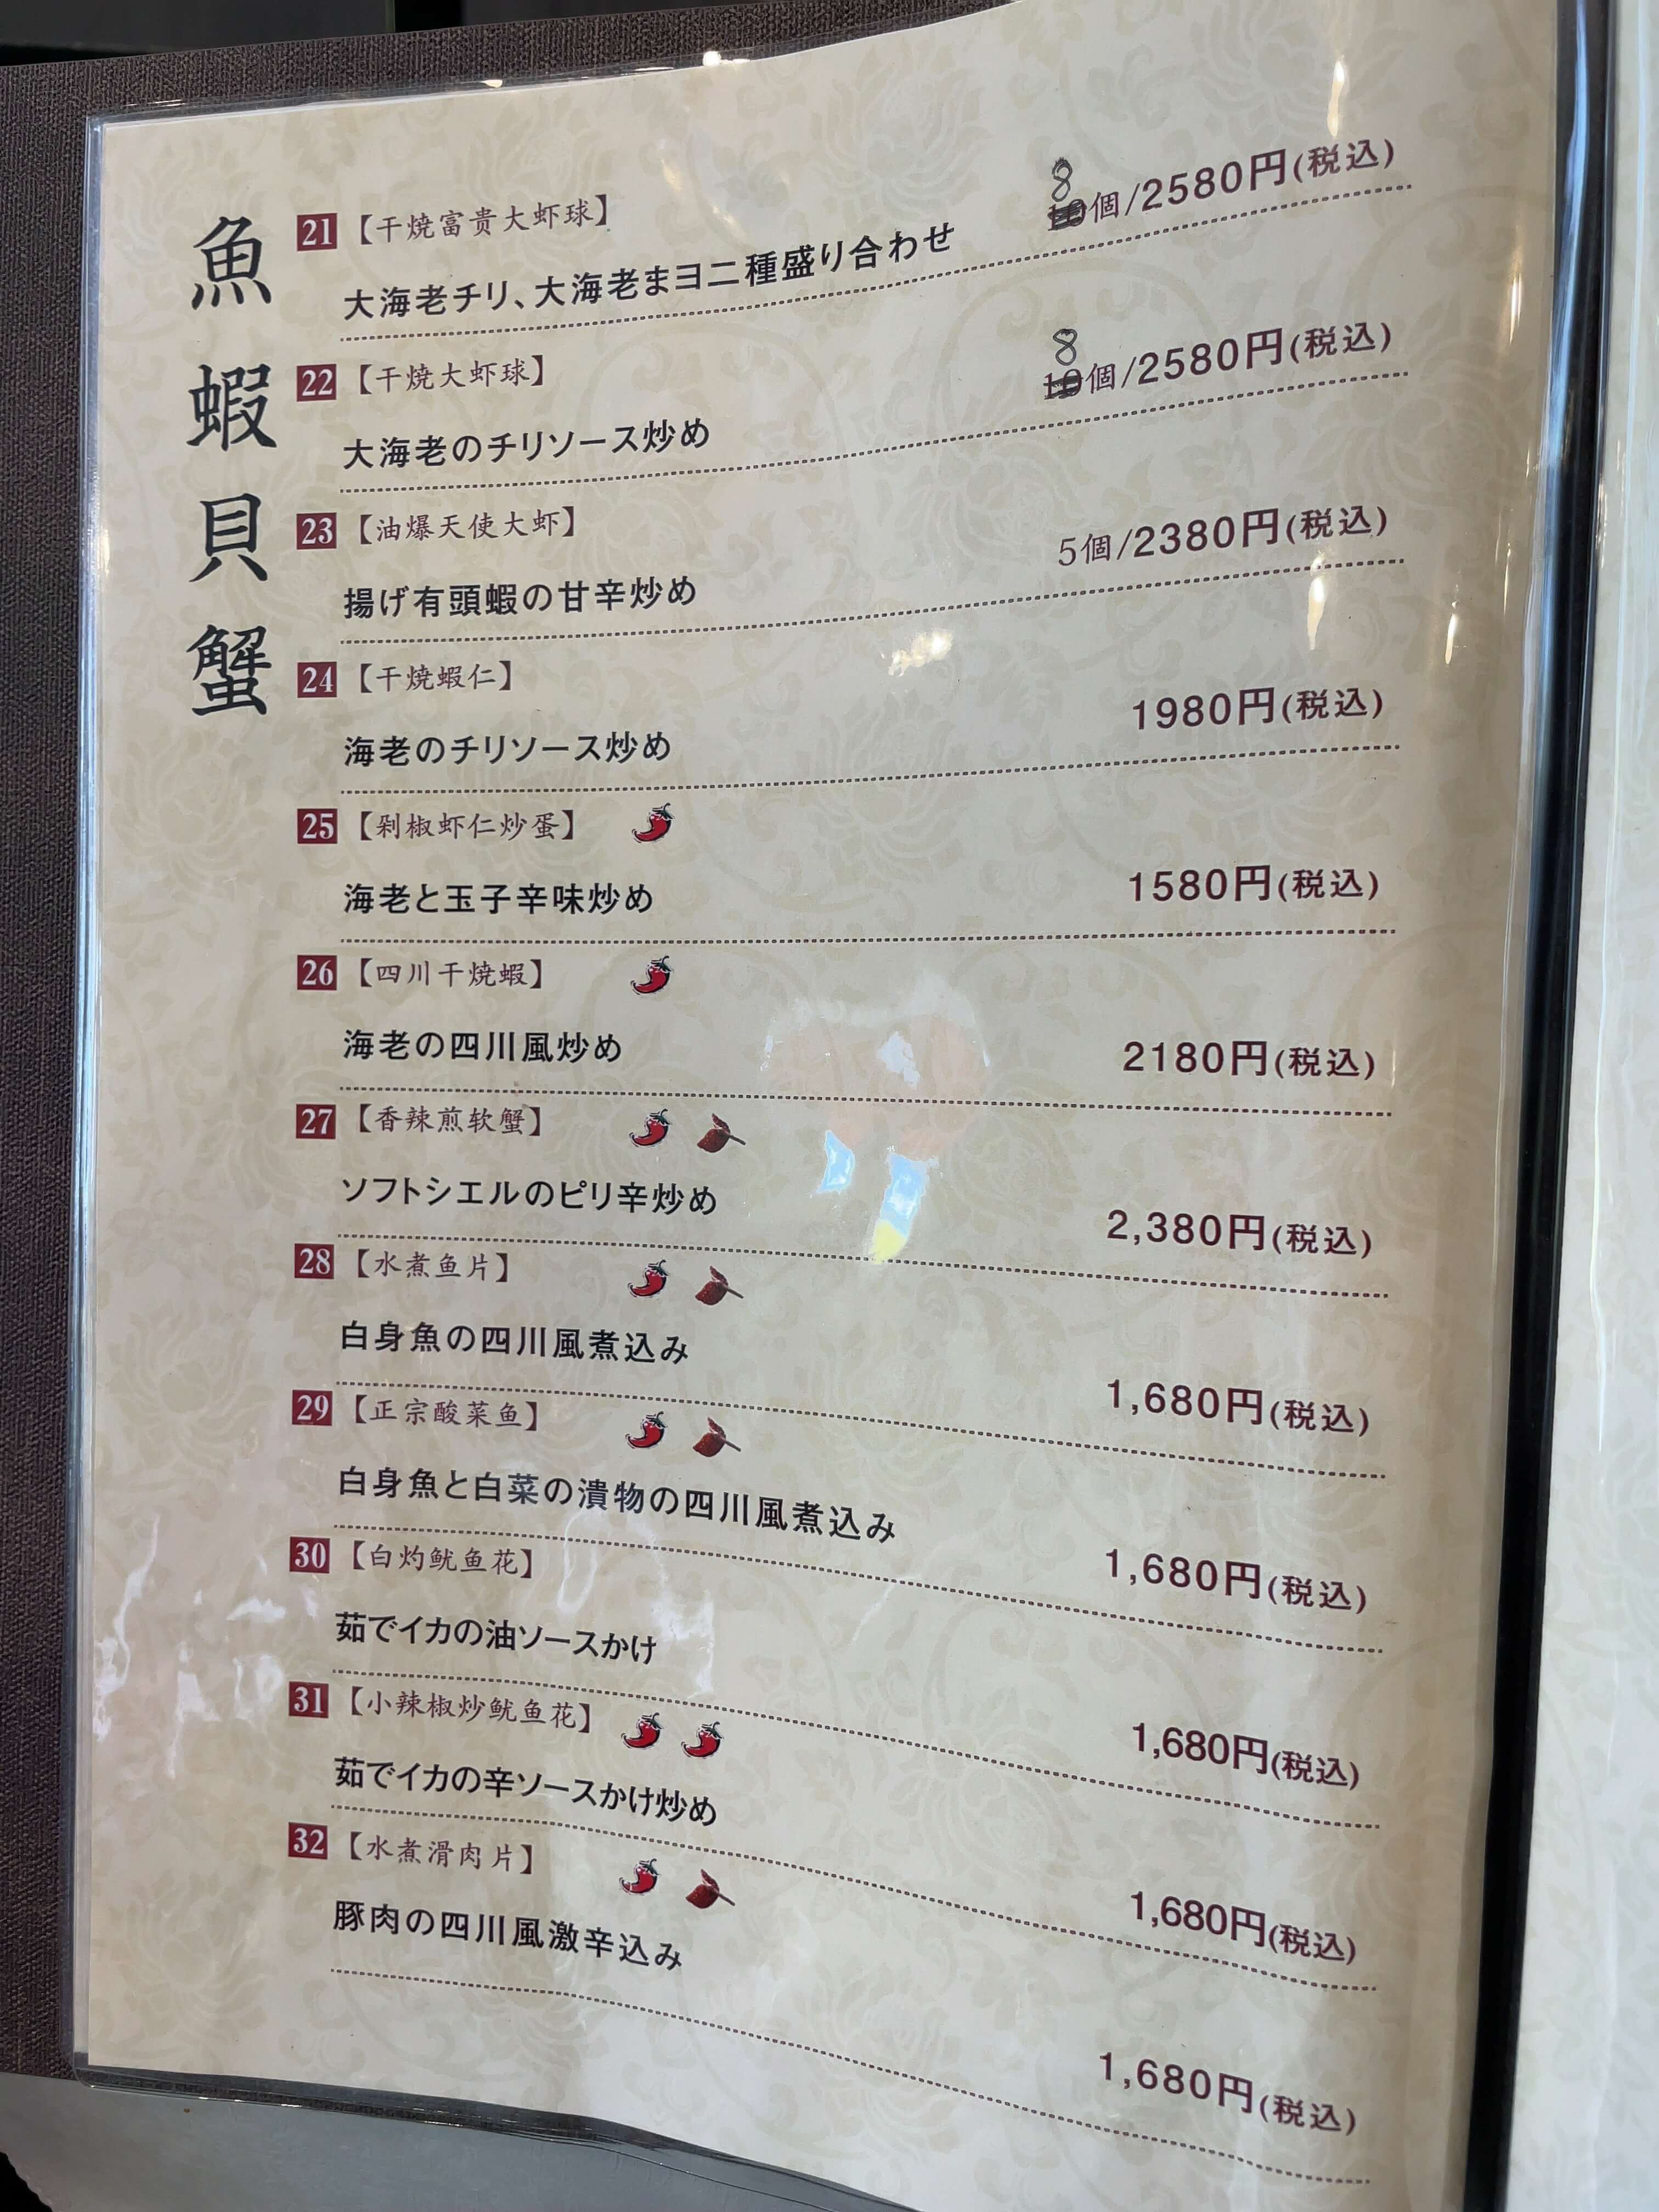 四川陳麻婆　menu